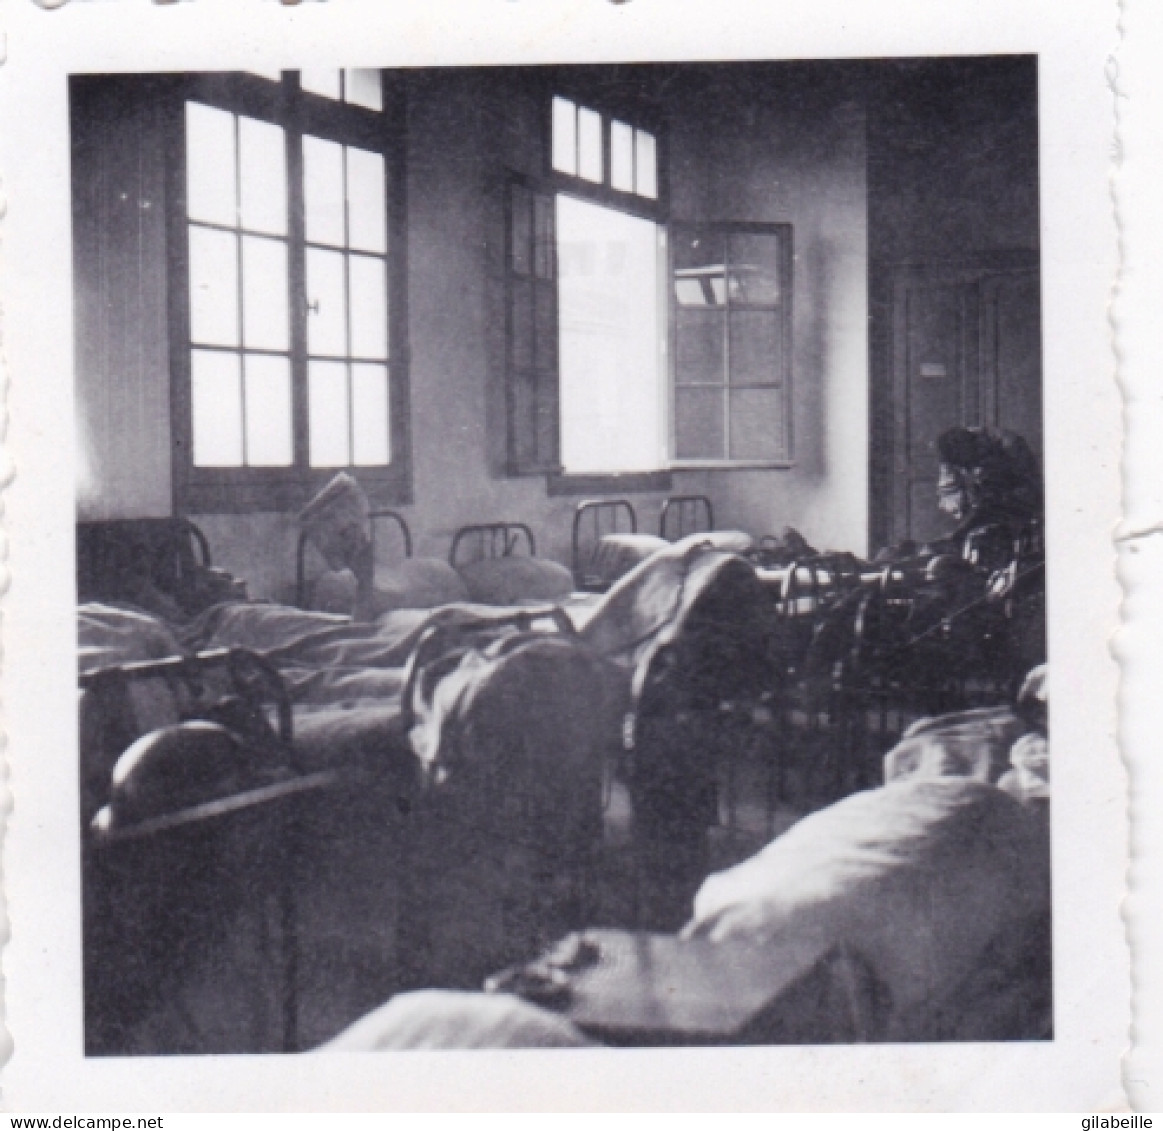 Petite Photo Originale - 1941 - Guerre 1939/45 -schlafsaal In LA ROCHE - Dortoir A LA ROCHE - War, Military